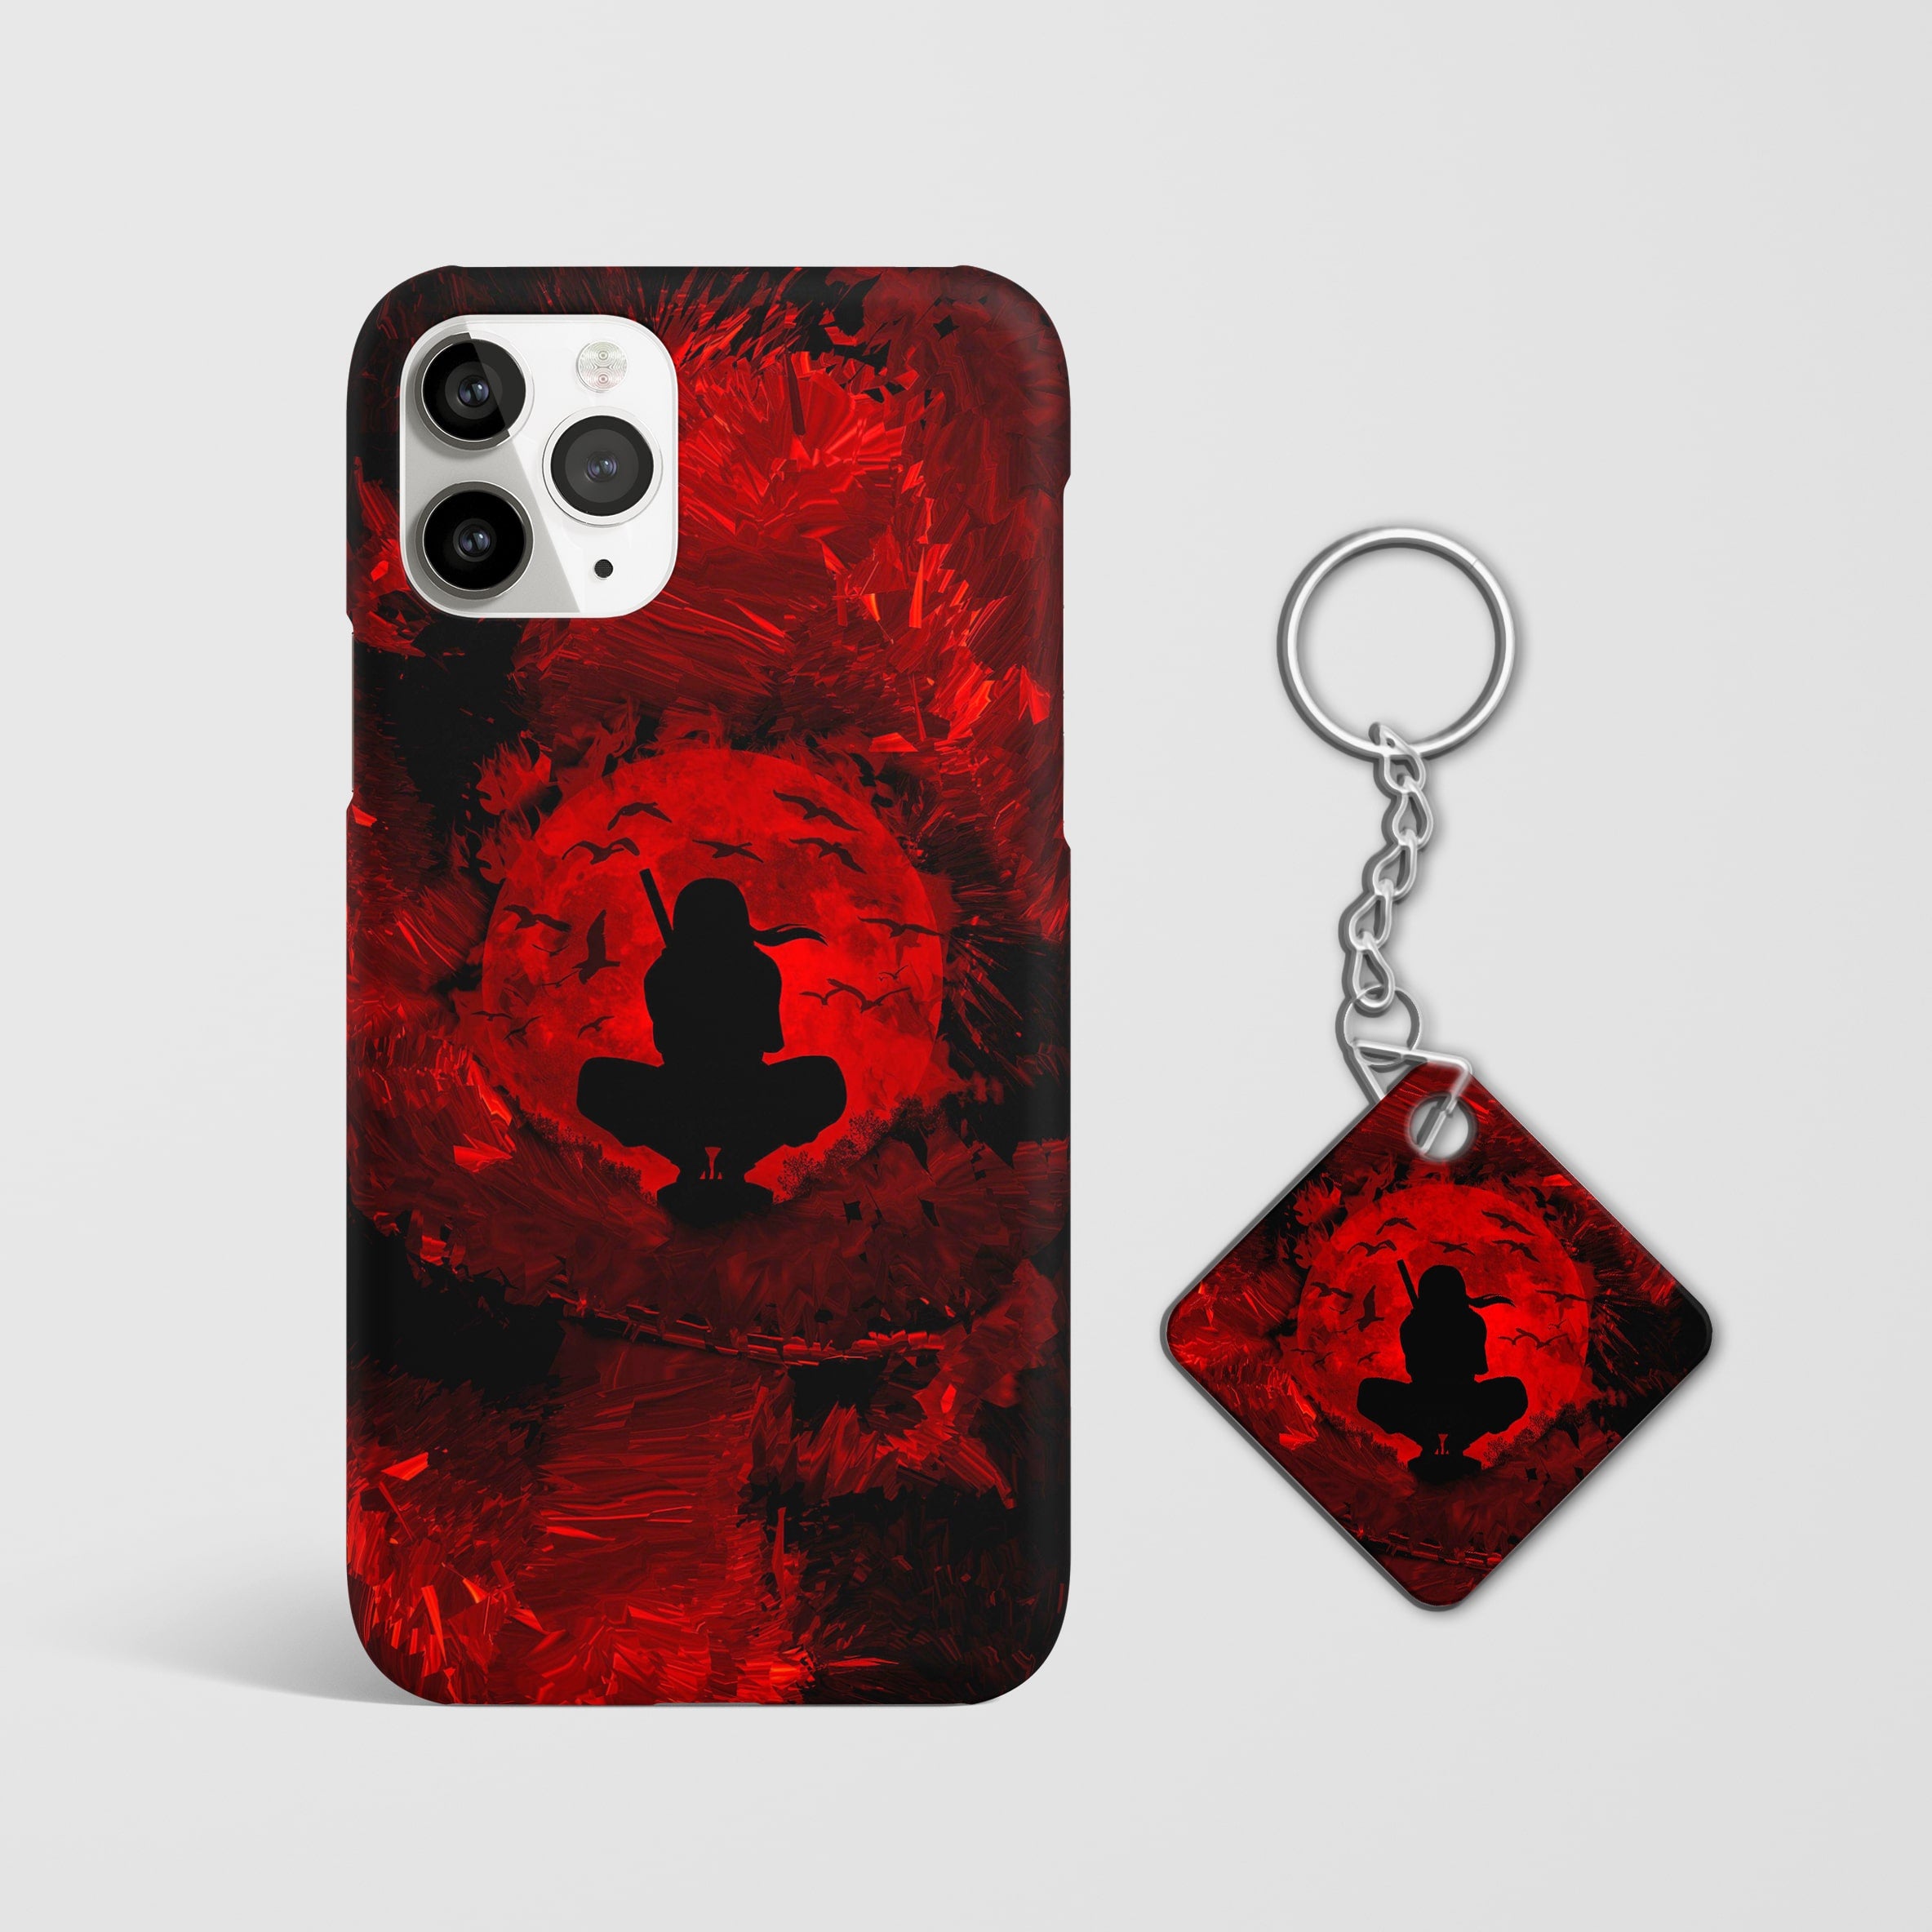 Sasuke Uchiha Red Moon Phone Cover with keychain